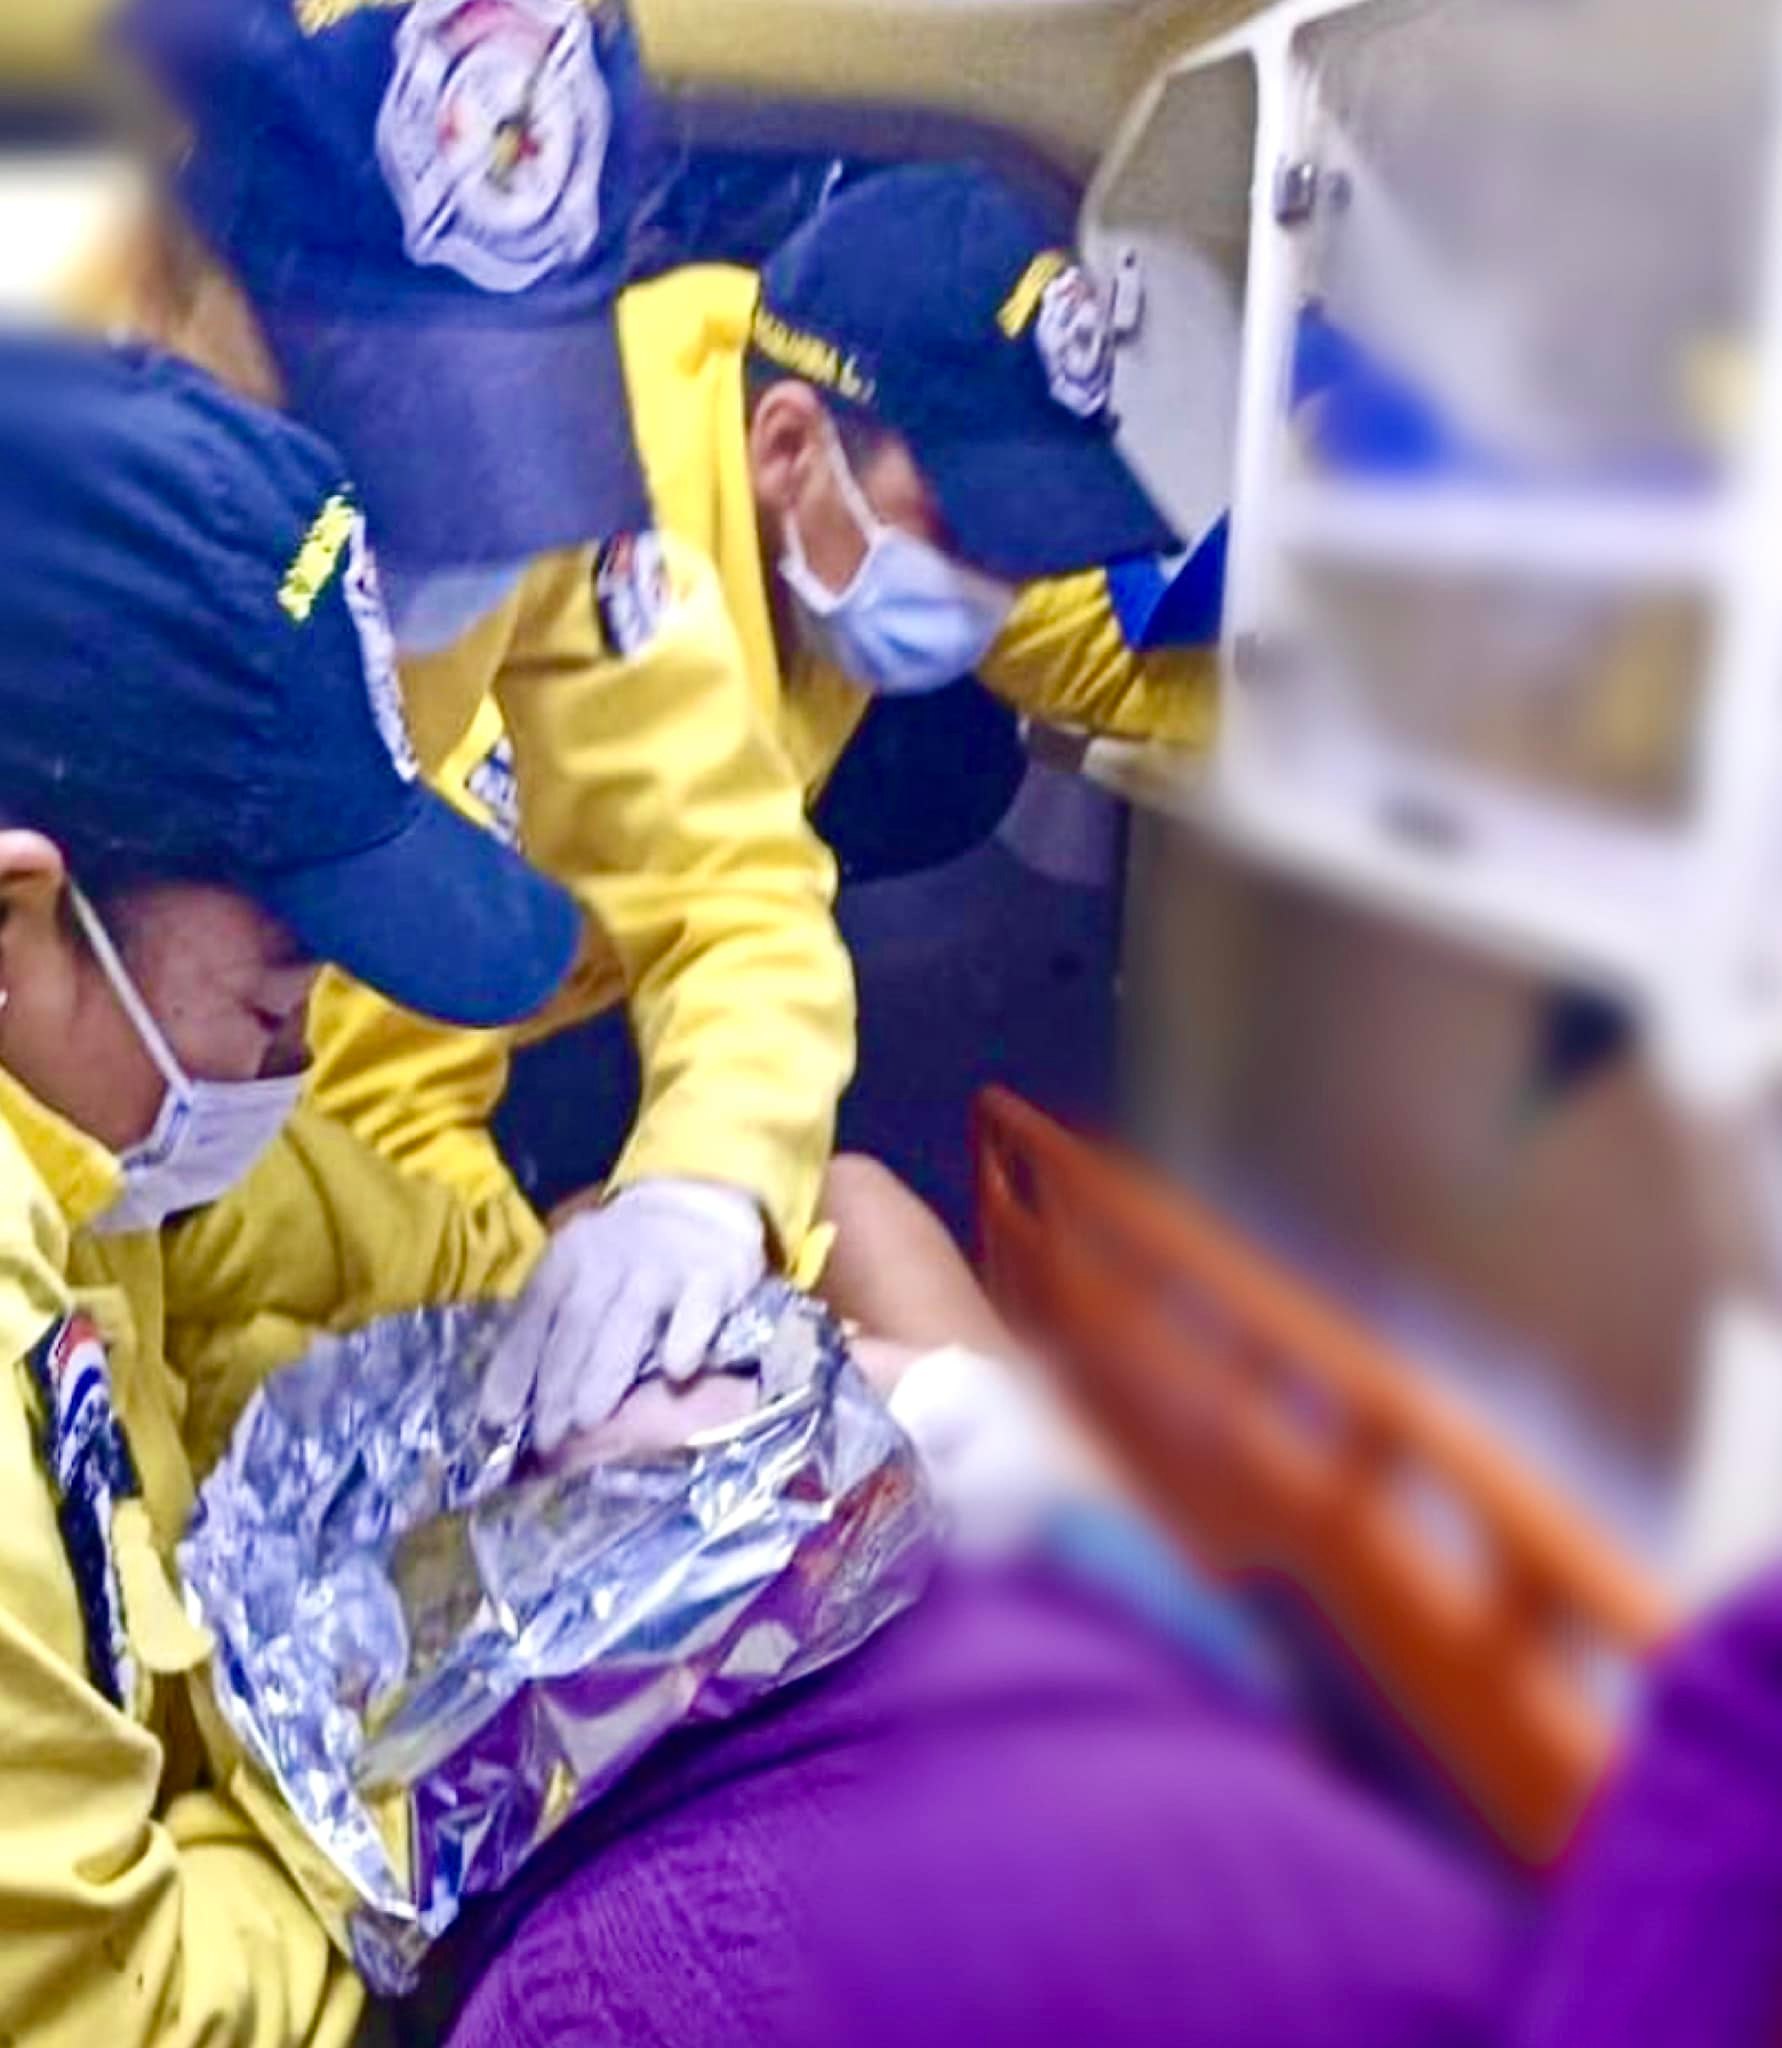 Las valientes bomberas de PJC ayudaron en el alumbramiento del bebé en el interior de la ambulancia. Foto: Bomberos Pedro Juan Caballero K51 CBVP